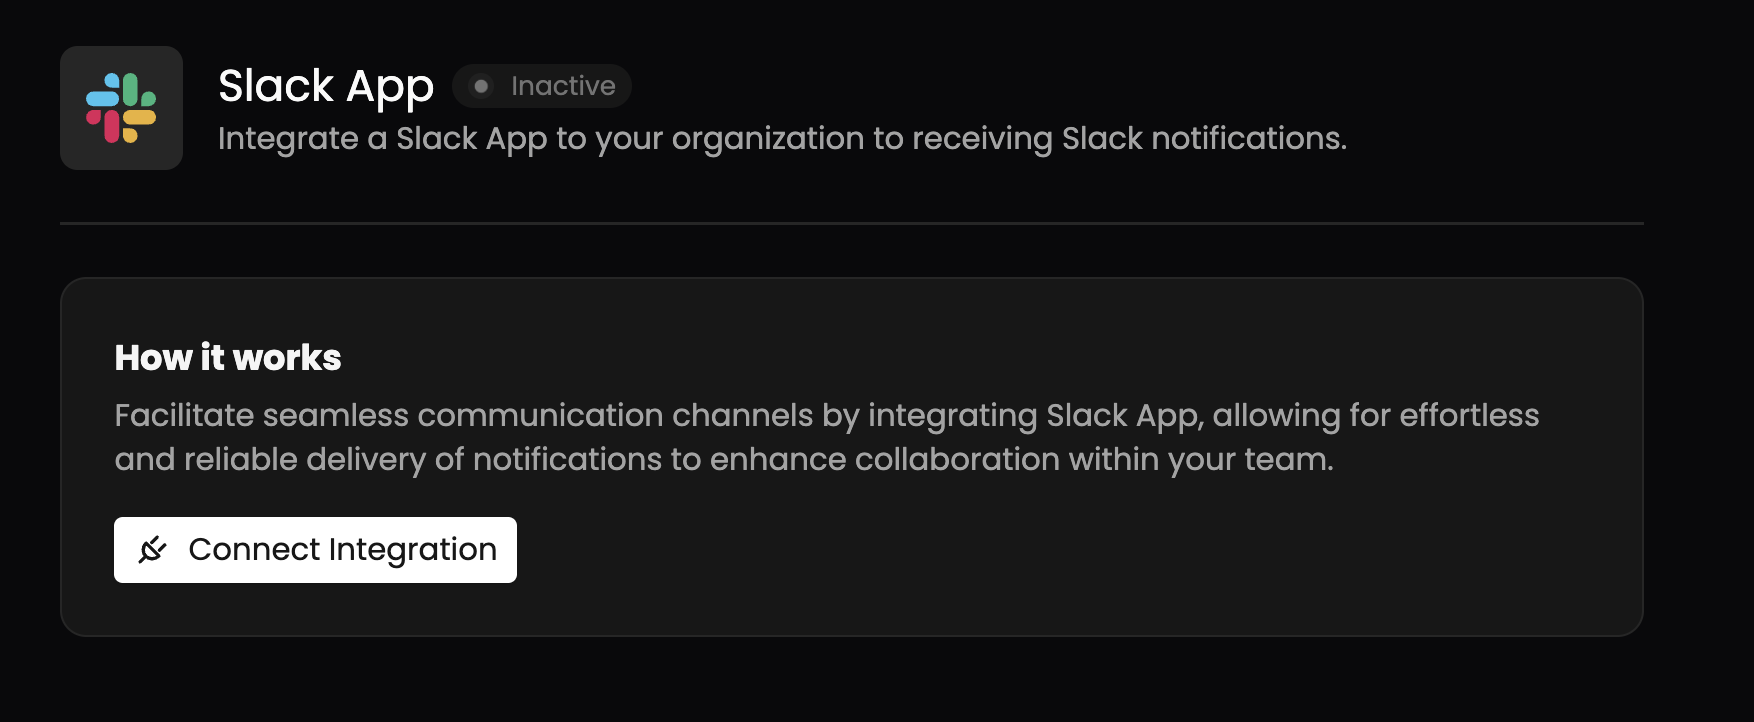 Slack App Integration Details